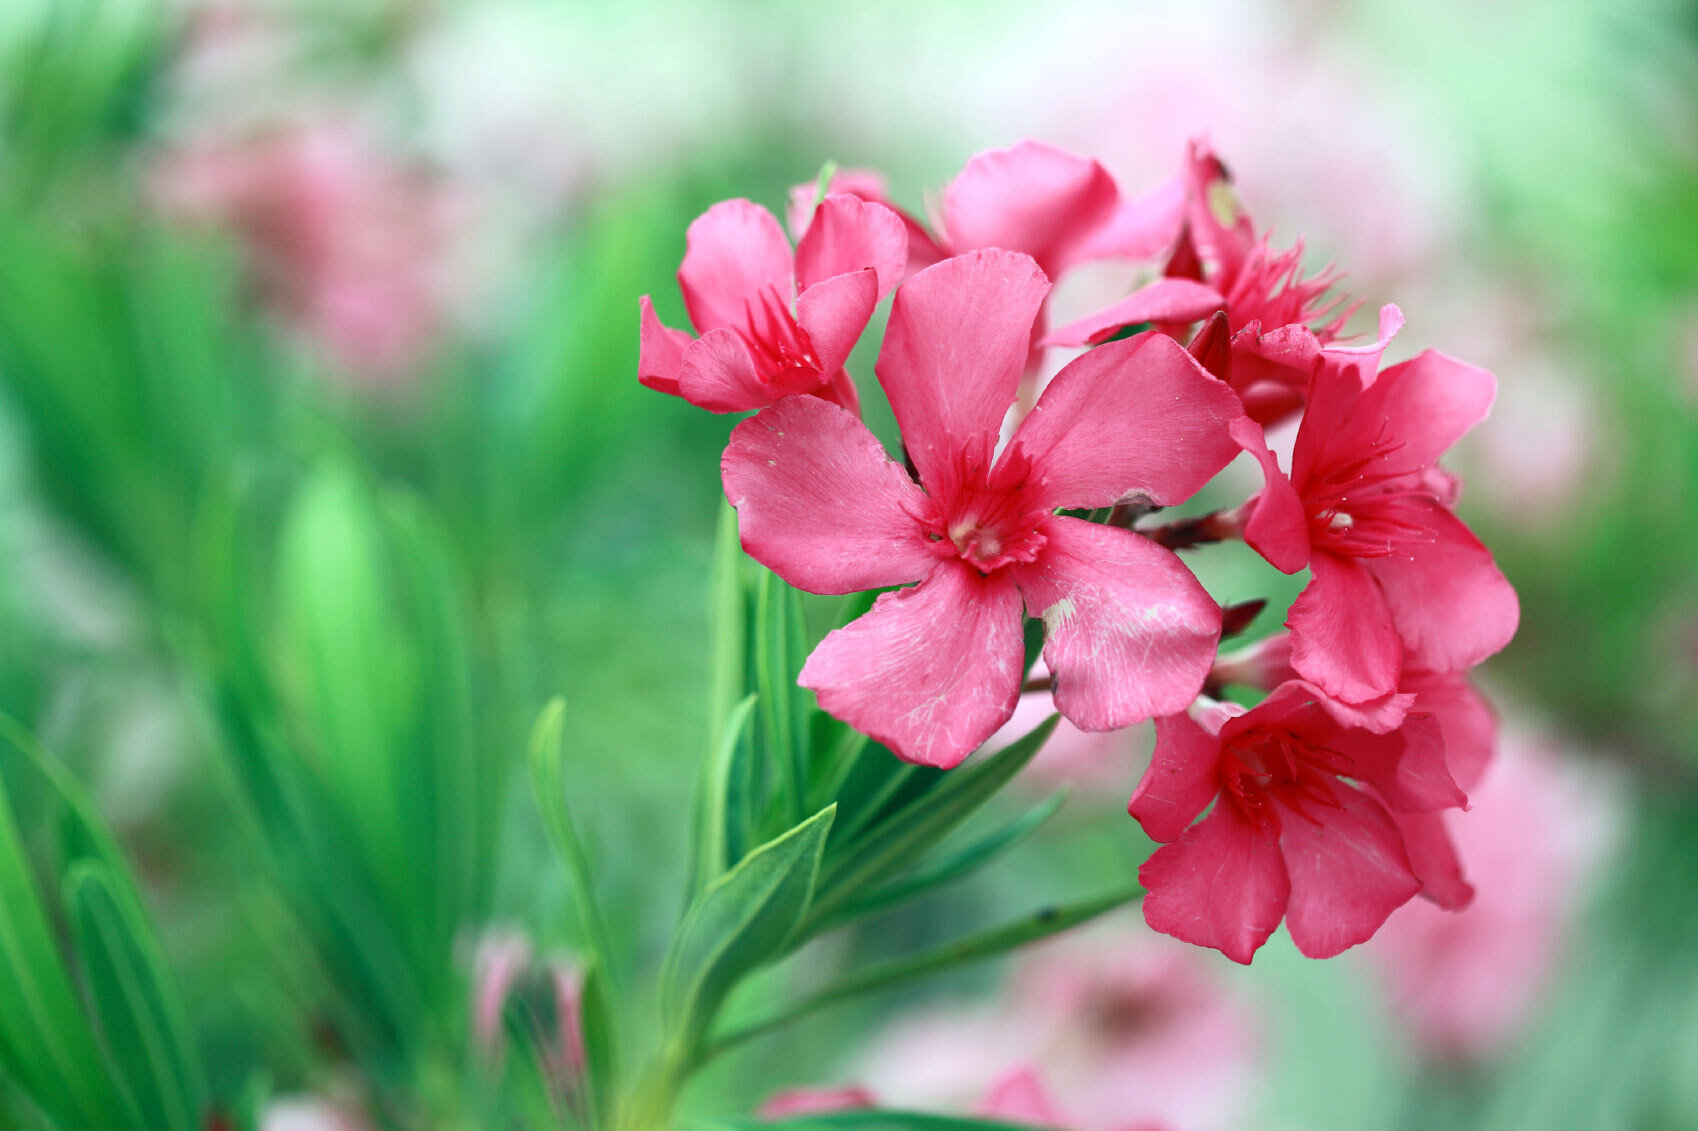 5 loại hoa đẹp nhưng rất độc, tuyệt đối không bày trong nhà - 4